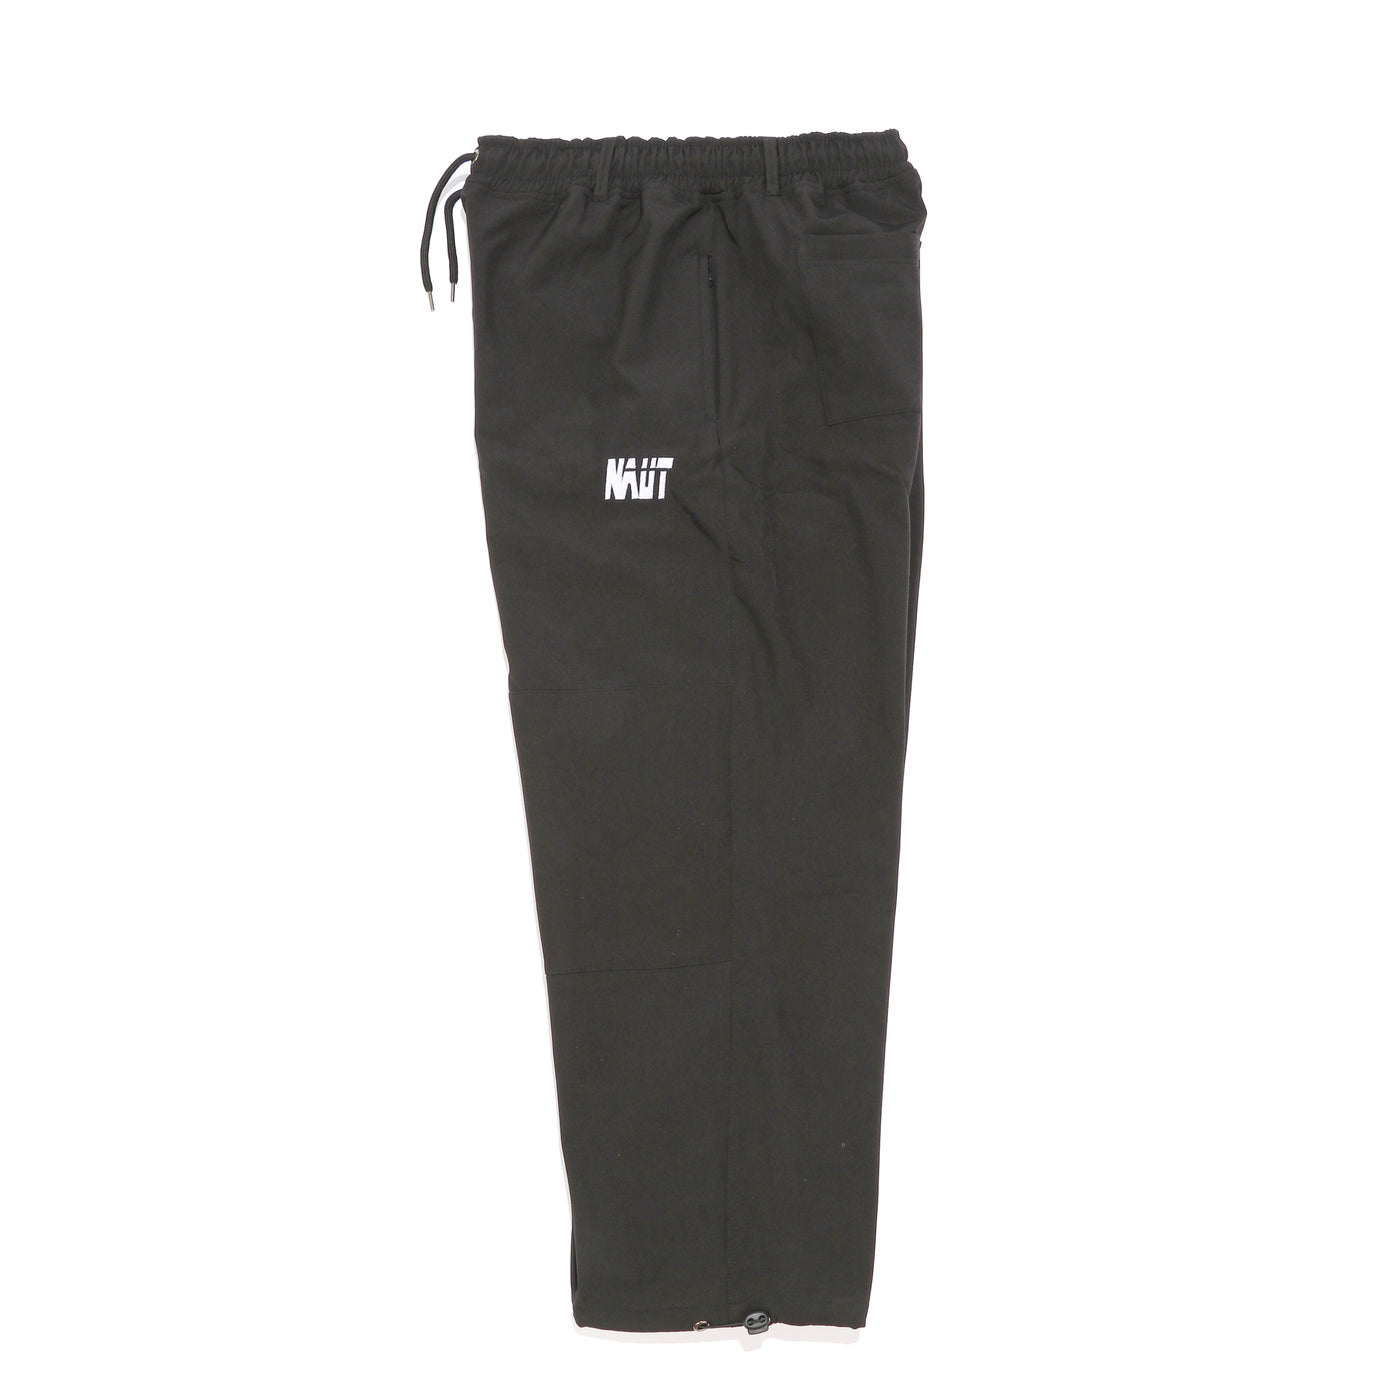 Overloose Baggy Pants Black – NAUT-online store